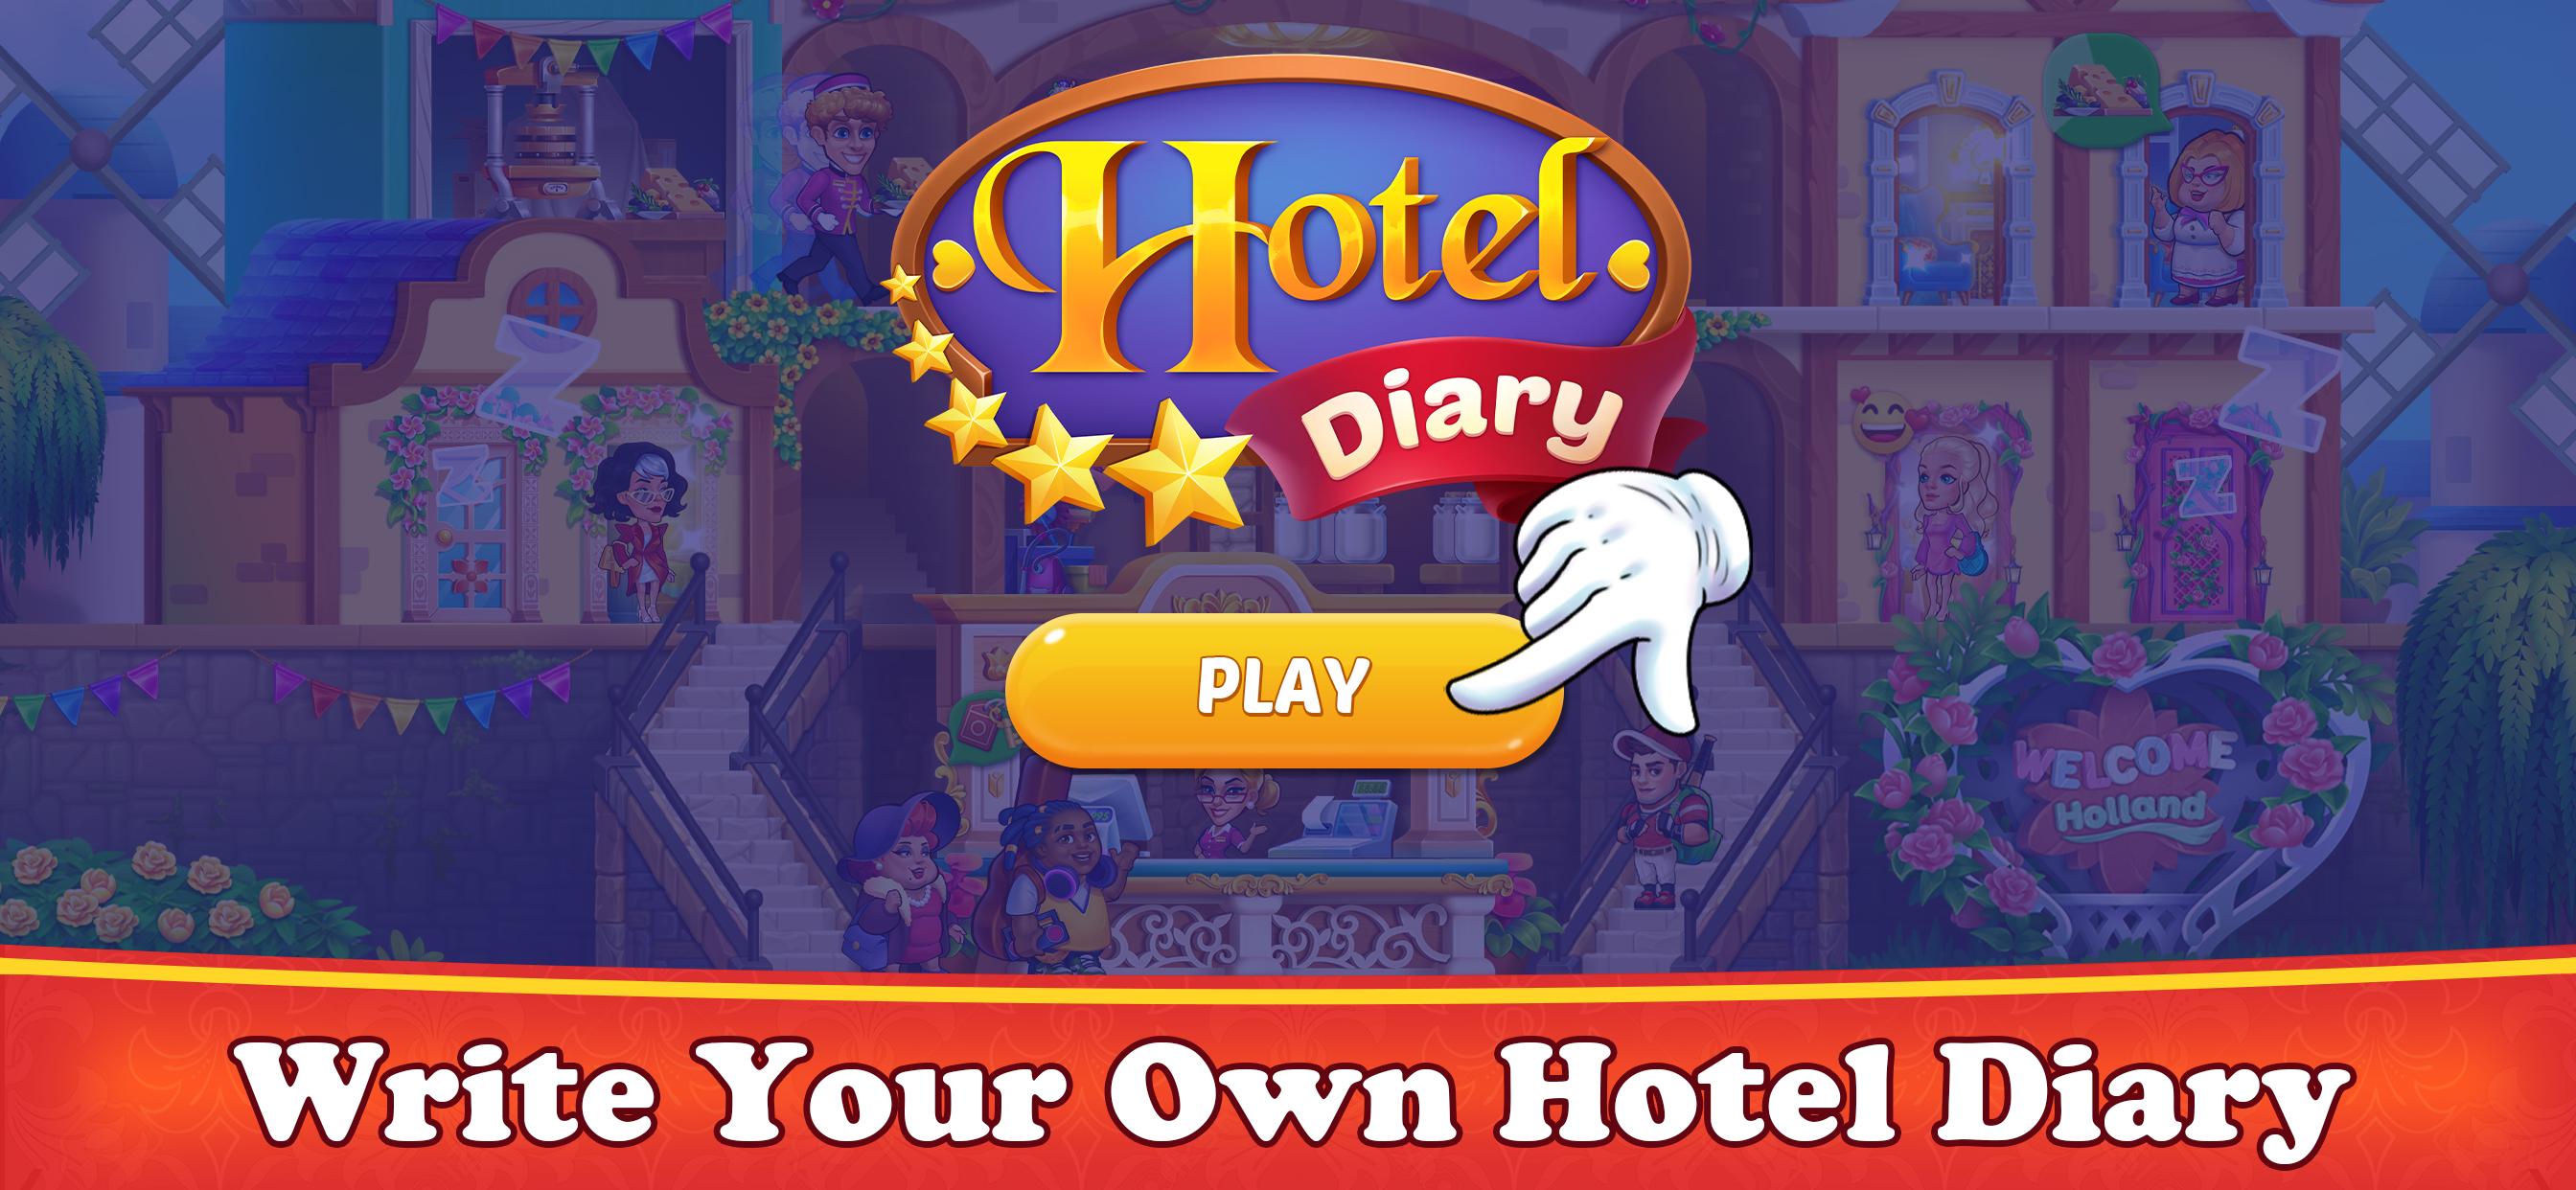 Отель мечты играть. Игра отель мечты. Игра управлять отелем. The Hotel игра. My Hotel игра.